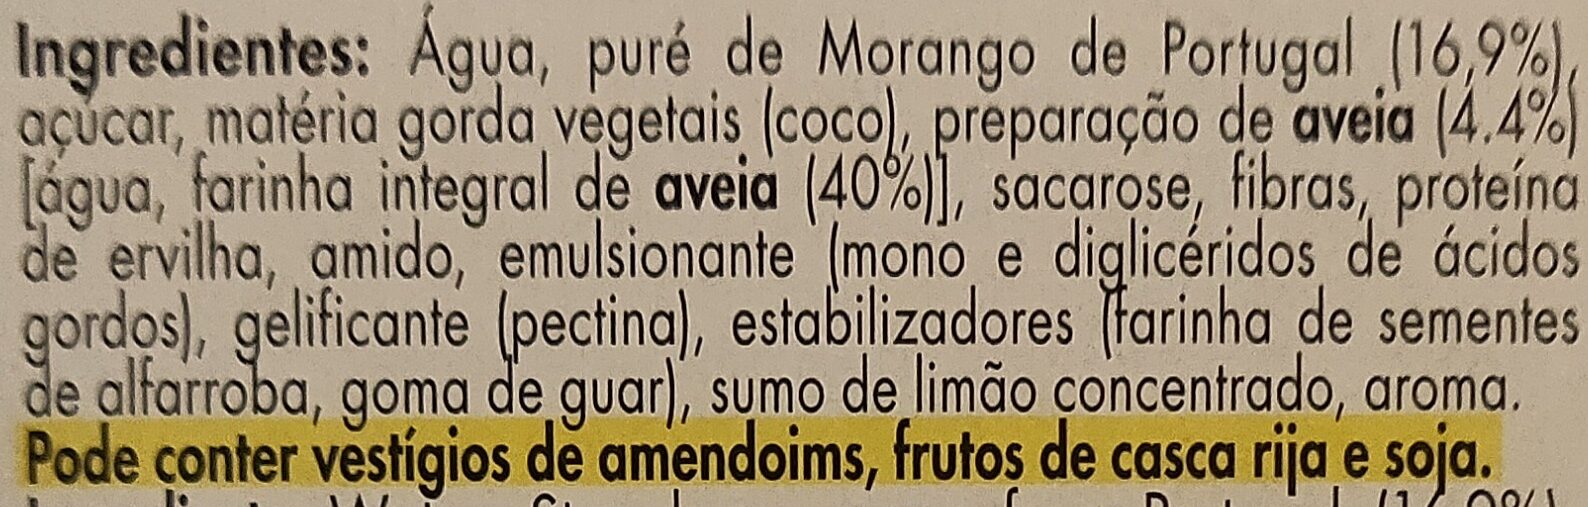 Gelado vegetal de aveia com preparado de morango com pedaços de morango de Portugal - Ingredientes